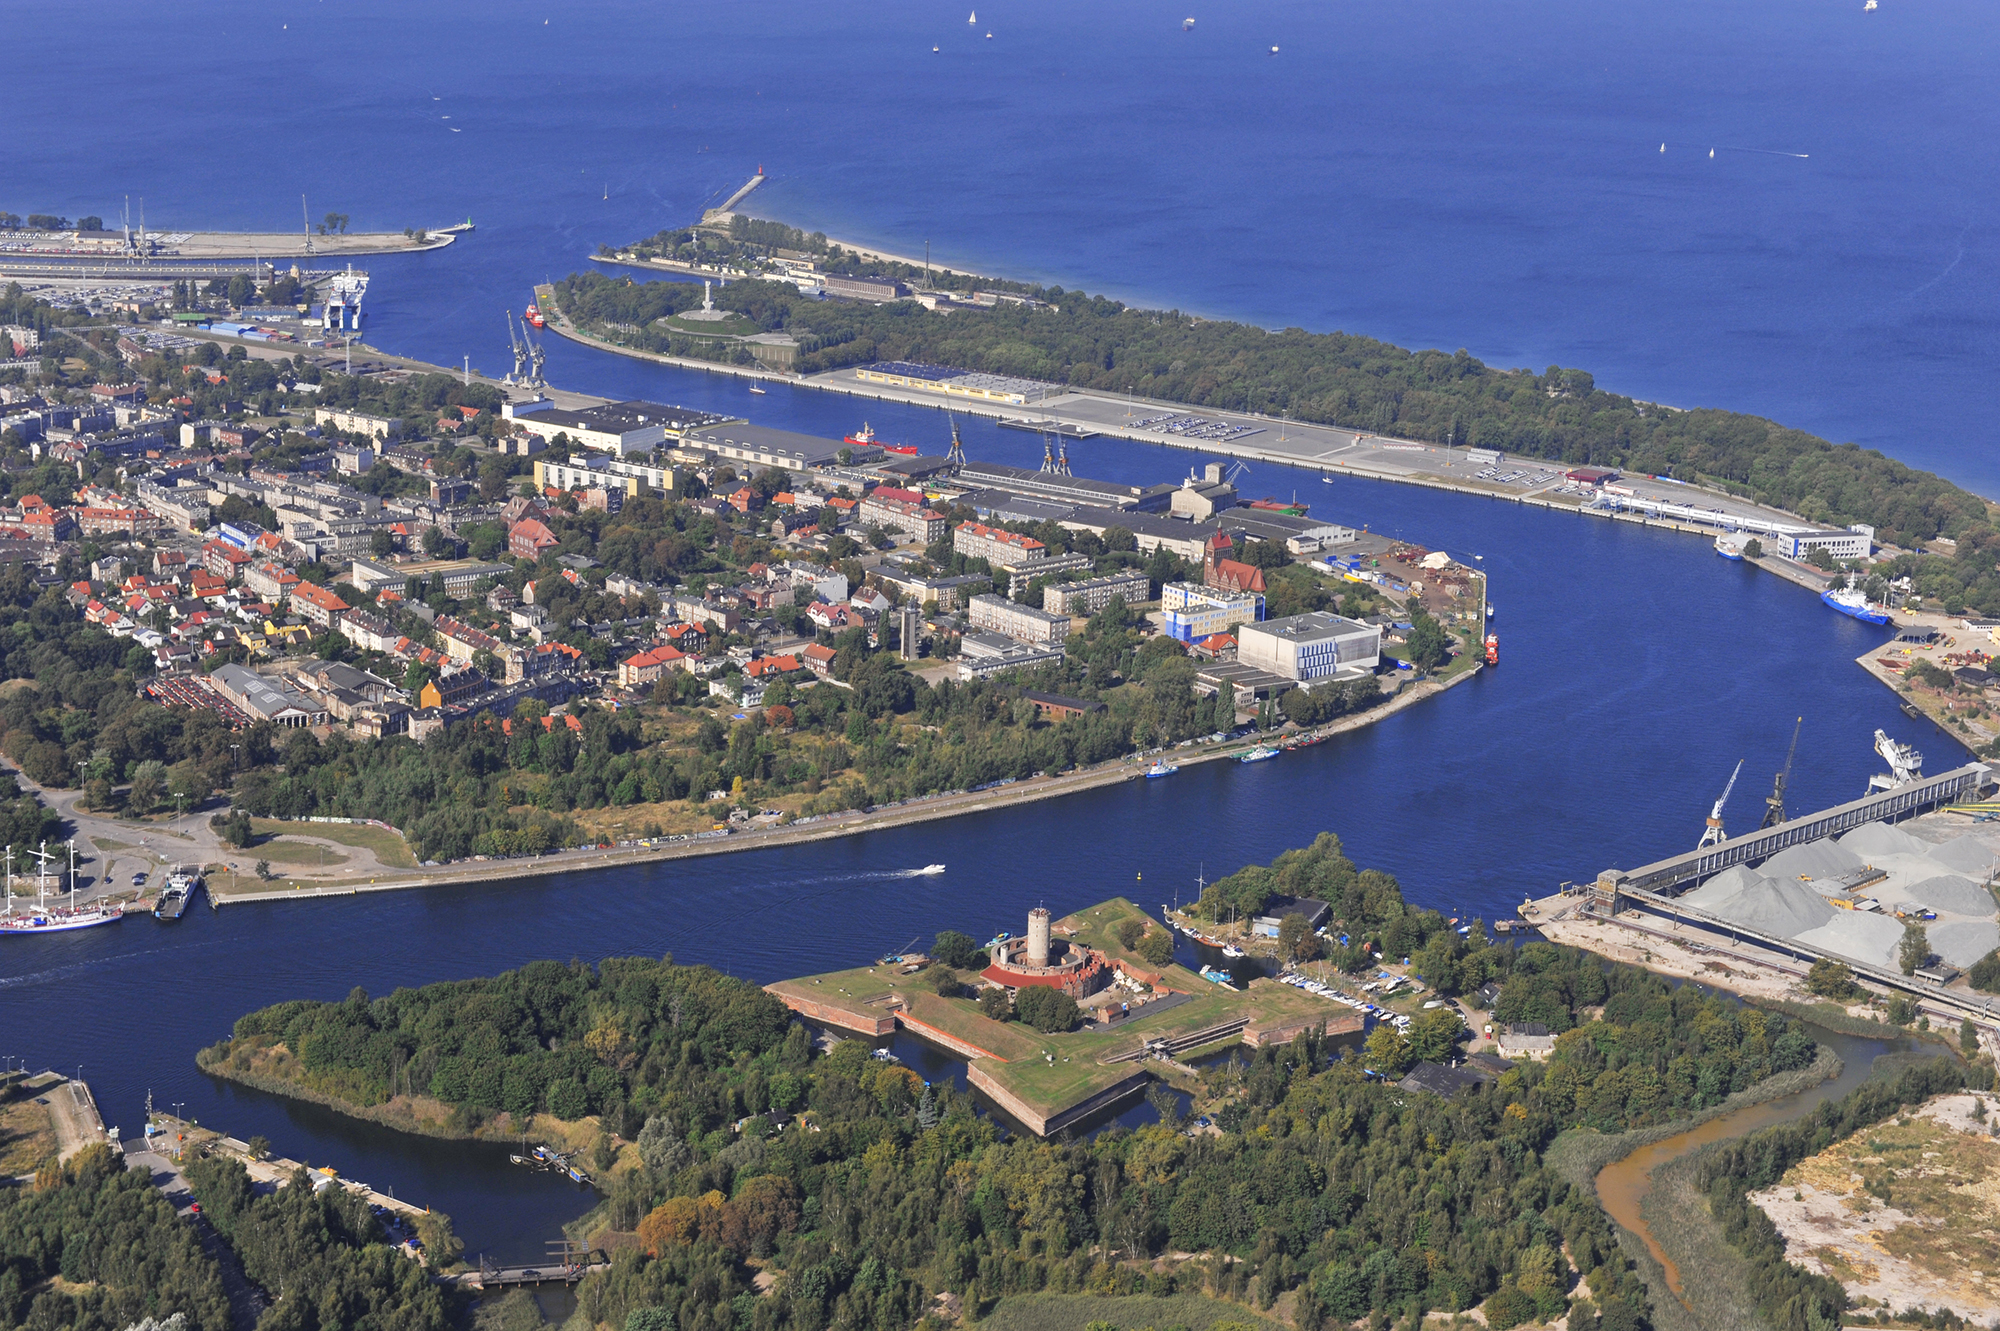 Widok z lotu ptaka. W dole zdjęcia Twierdza Wisłoujście. Wyżej, po prawej widać półwysep Westerplatte. W środkowej części i po lewej leży dzielnica Nowy Port.